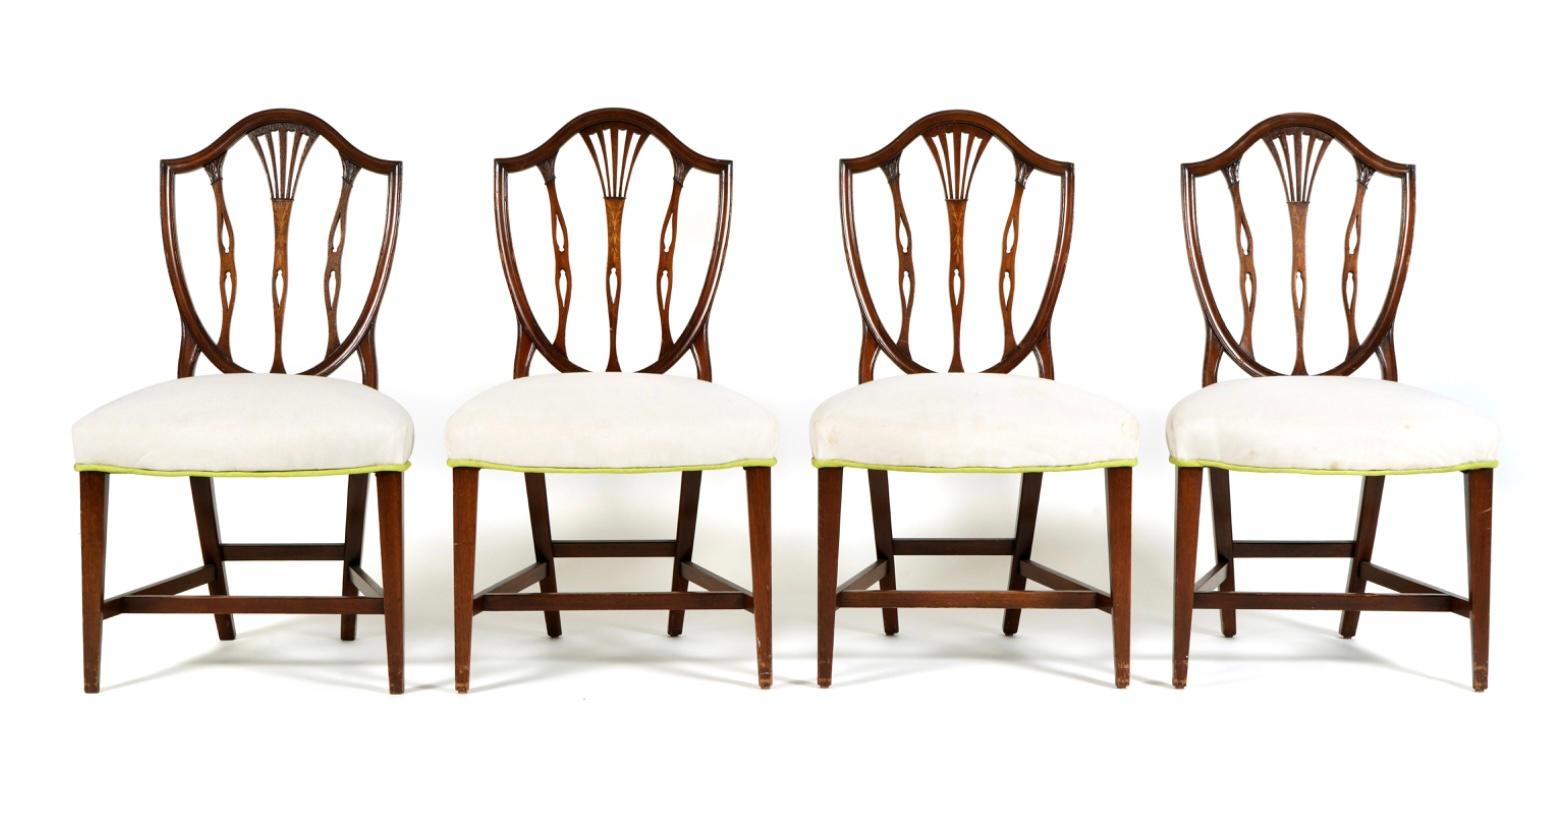 Satz von acht Hepplewhite-Esszimmerstühlen des späten 19. Jahrhunderts, zwei Stühle mit Armlehnen und sechs Beistellstühle. Die Stühle sind geschnitzt und geformt mit amerikanischer Schildrückenlehne mit Blumeneinlage in der Mitte. Polsterung aus